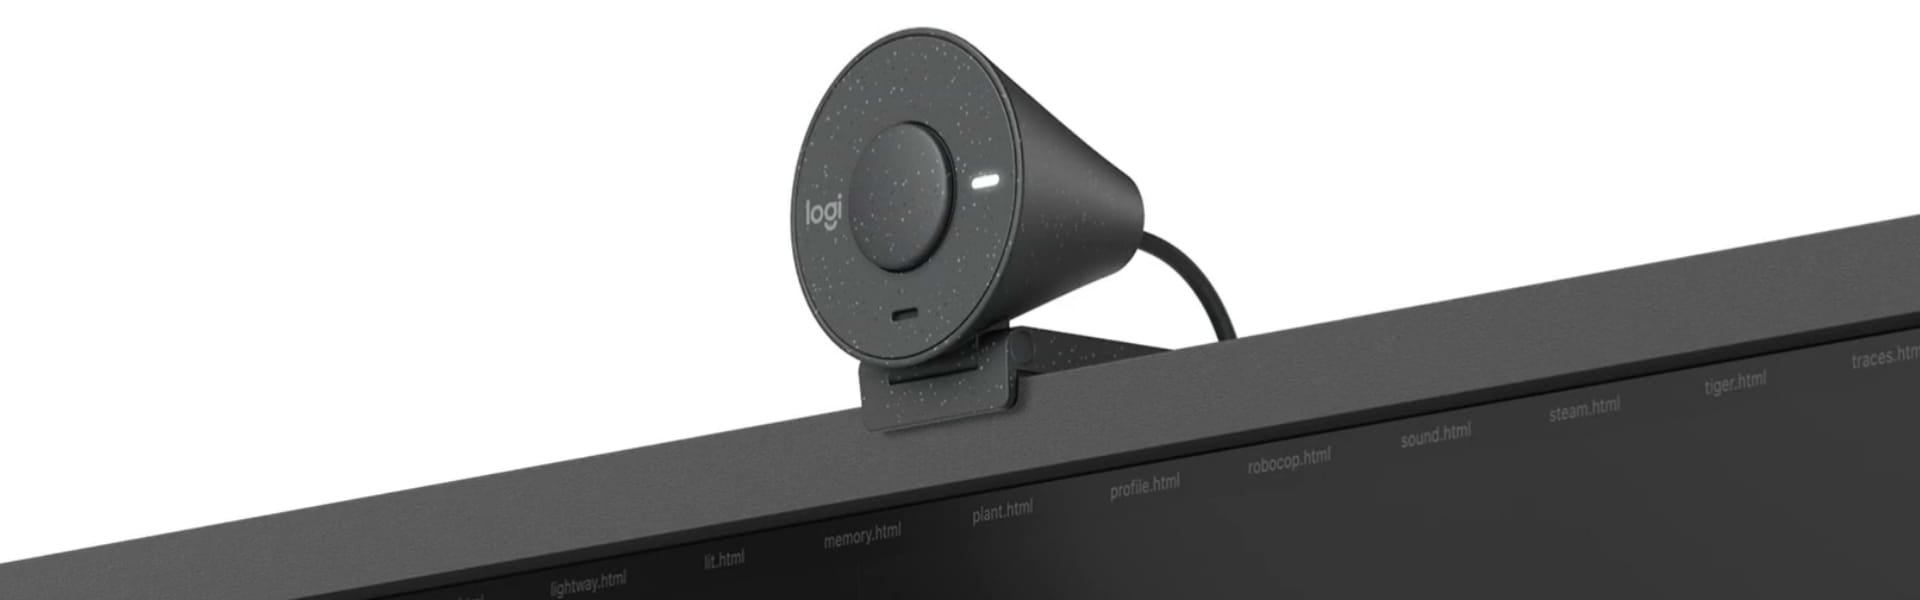 מצלמת רשת Logitech Brio 300 Full HD 1080p - צבע שחור שנתיים אחריות ע"י היבואן הרשמי